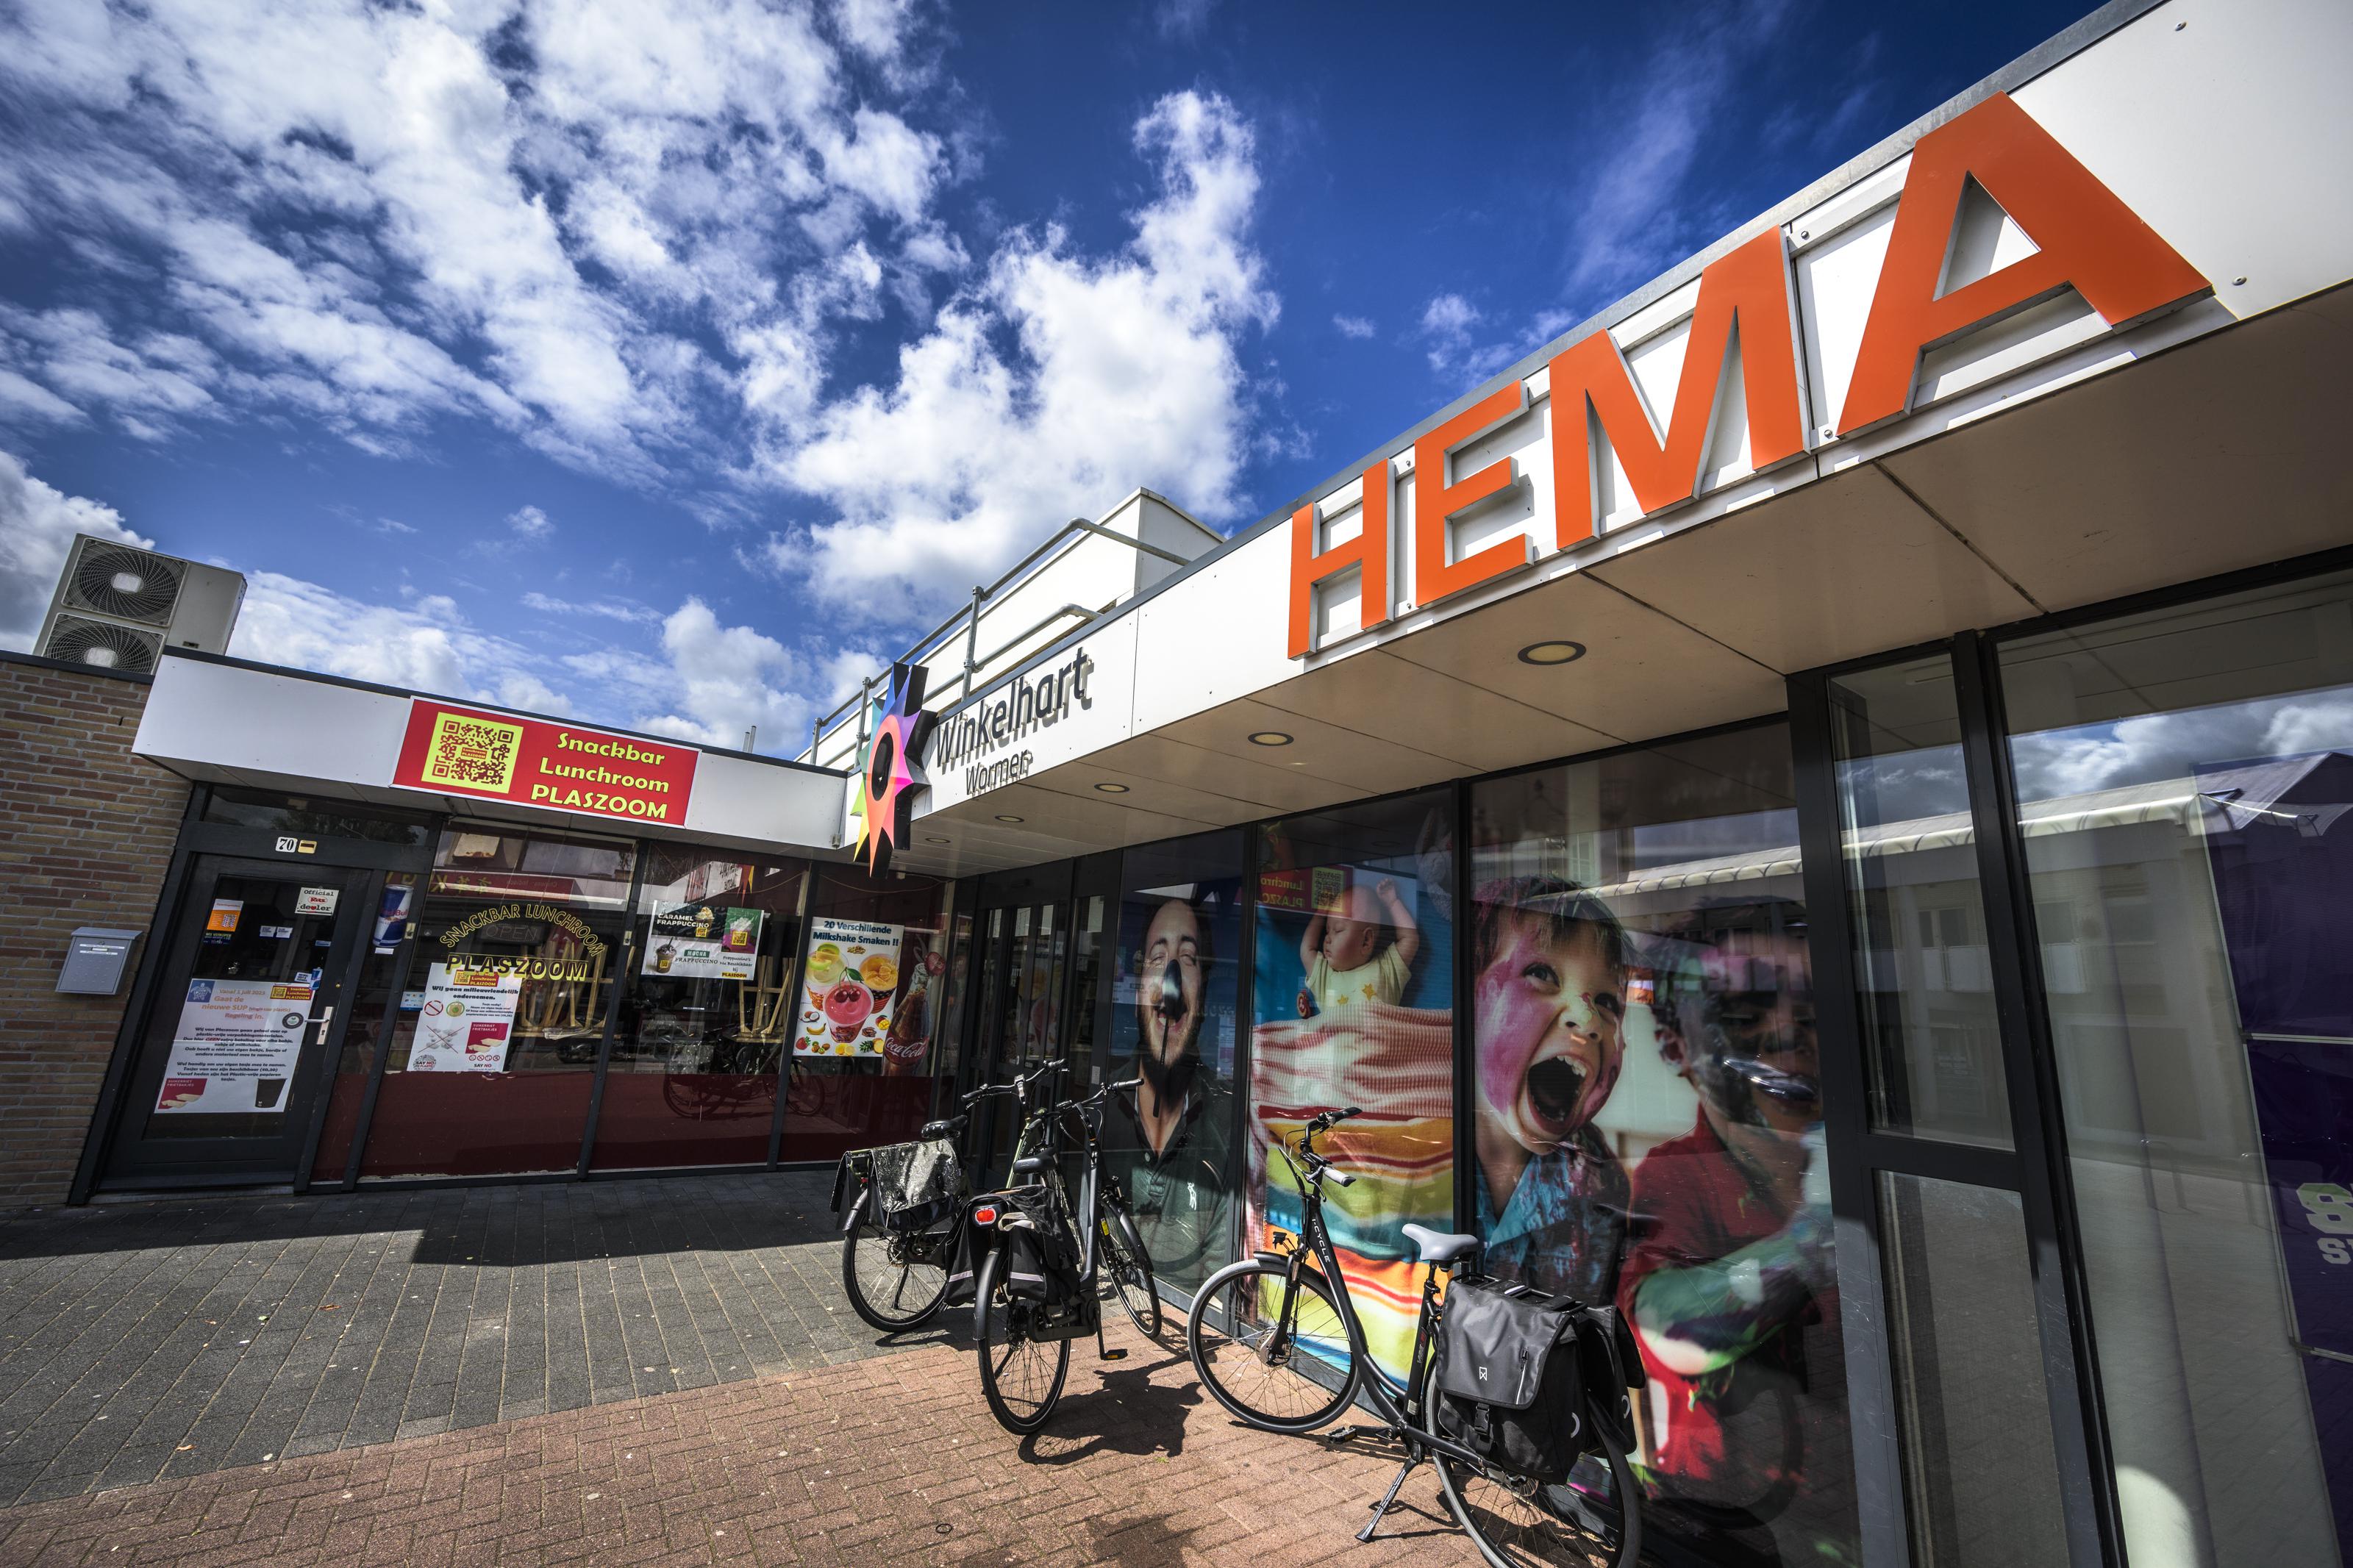 Verdachte (21) blijft achter slot van Hema in Wormer krijgt veel steun na steekpartij: 'Het scheelt dat je weet wie de dader is' | Noordhollandsdagblad